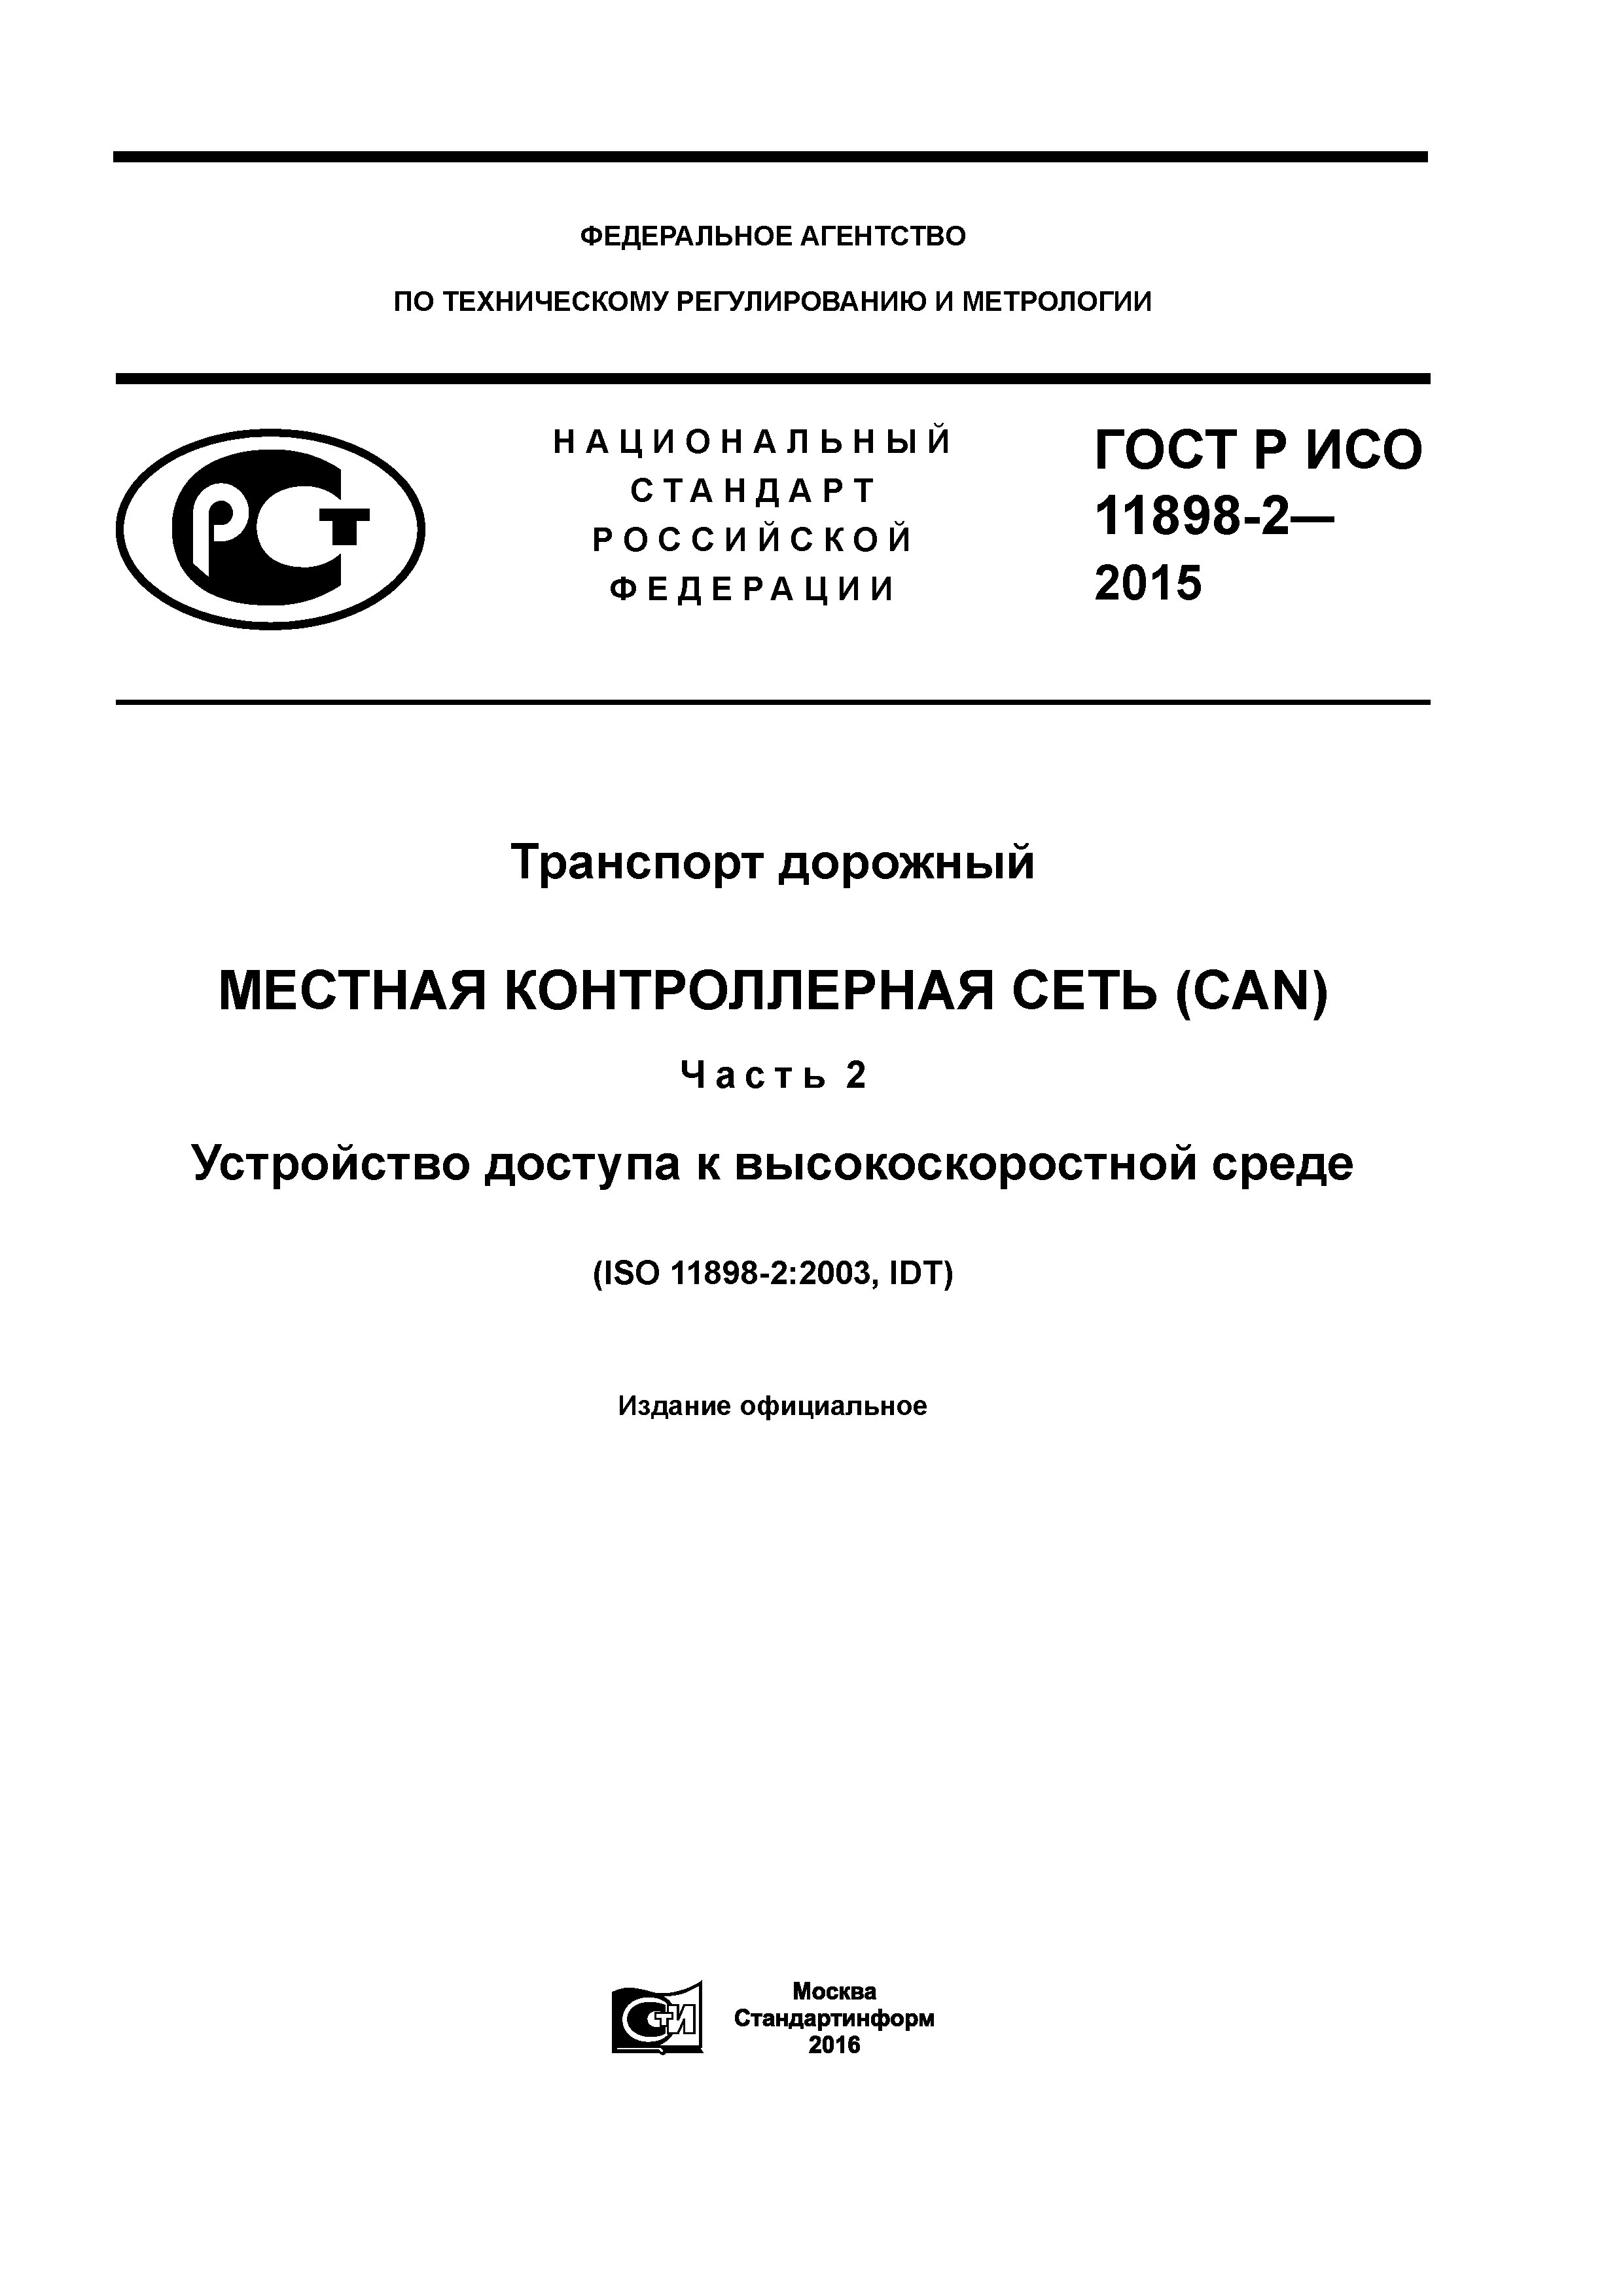 ГОСТ Р ИСО 11898-2-2015